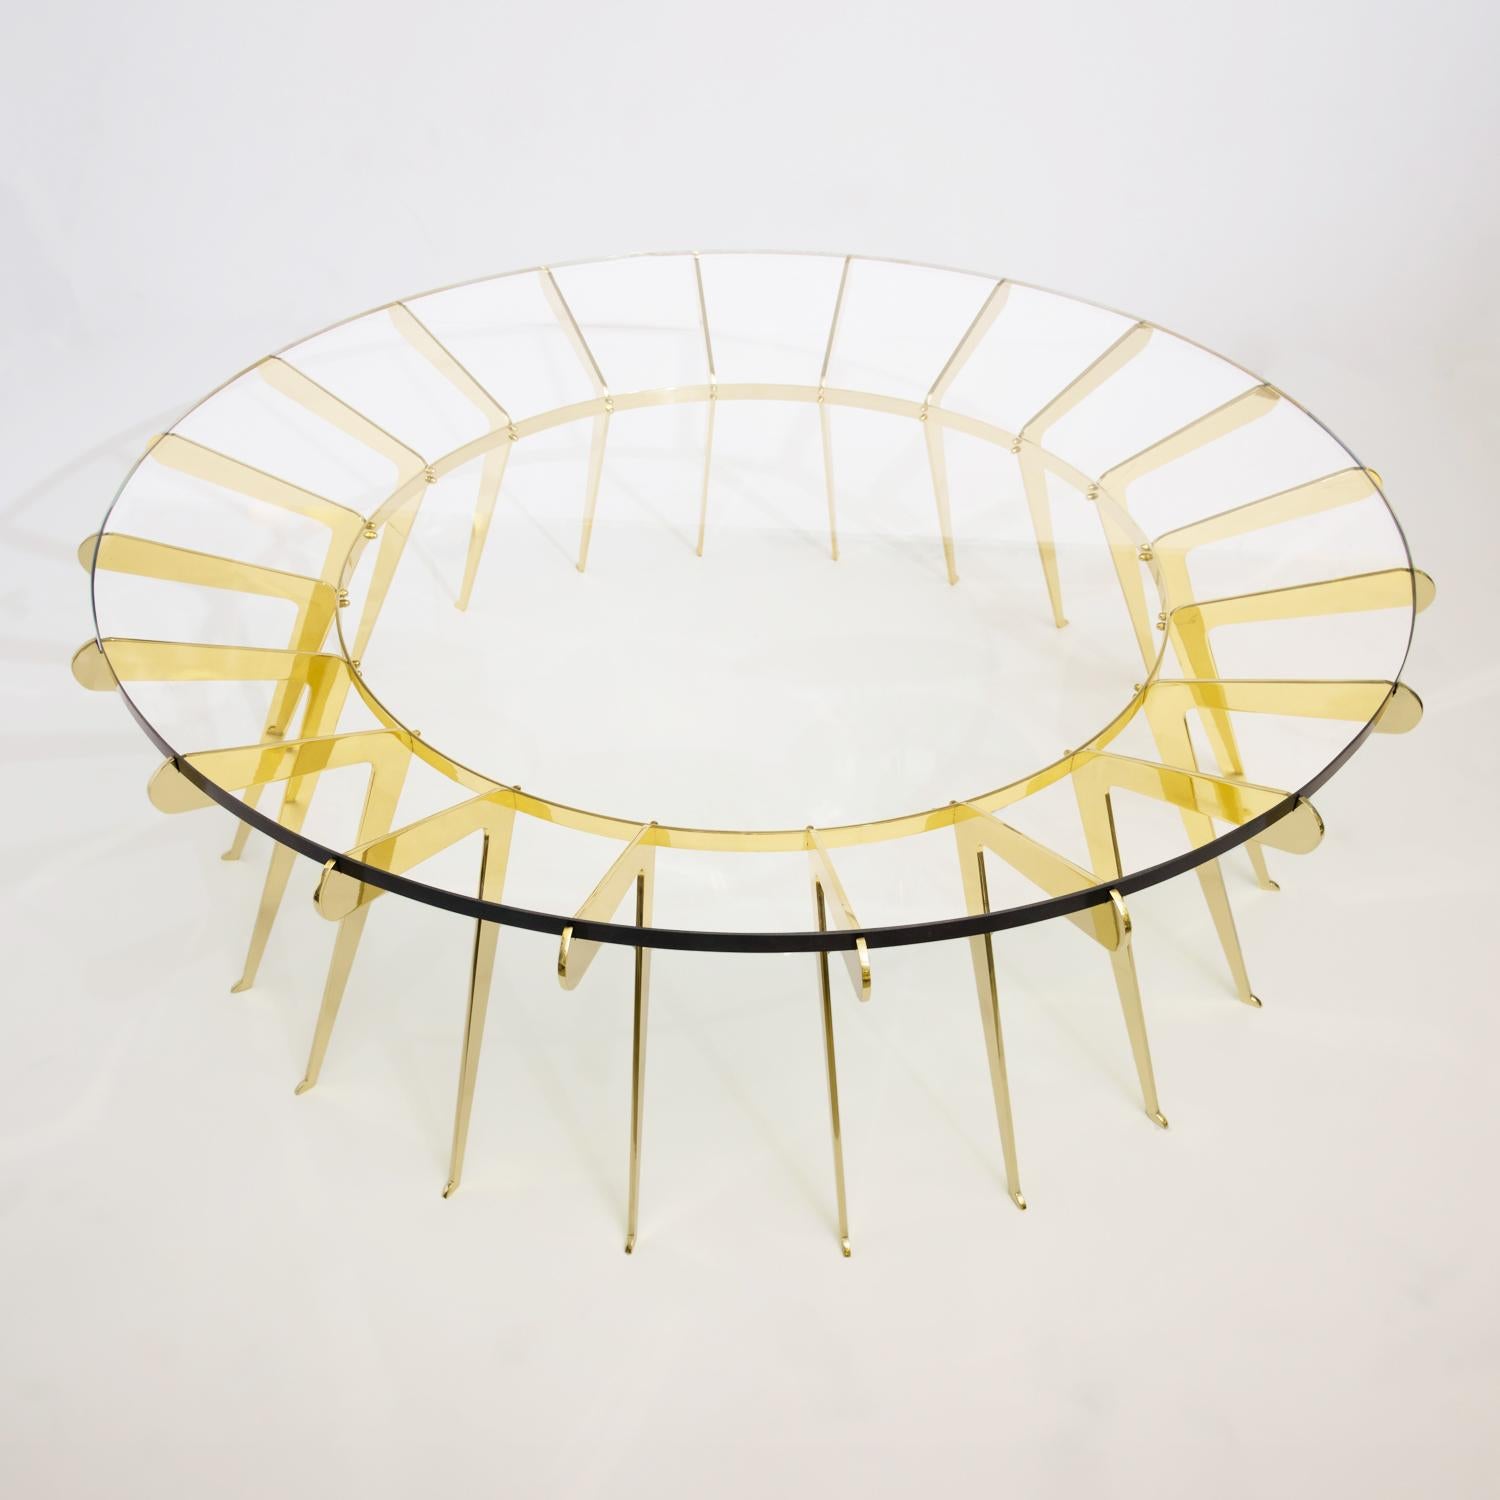 Der Tisch Solare spielt mit dem Konzept der Stärke in Zahlen, bei dem zahlreiche zart gestaltete Messingbeine zusammenkommen, um eine dicke Klarglasplatte zu halten. Abgebildet in poliertem Messing mit einem Durchmesser von 51